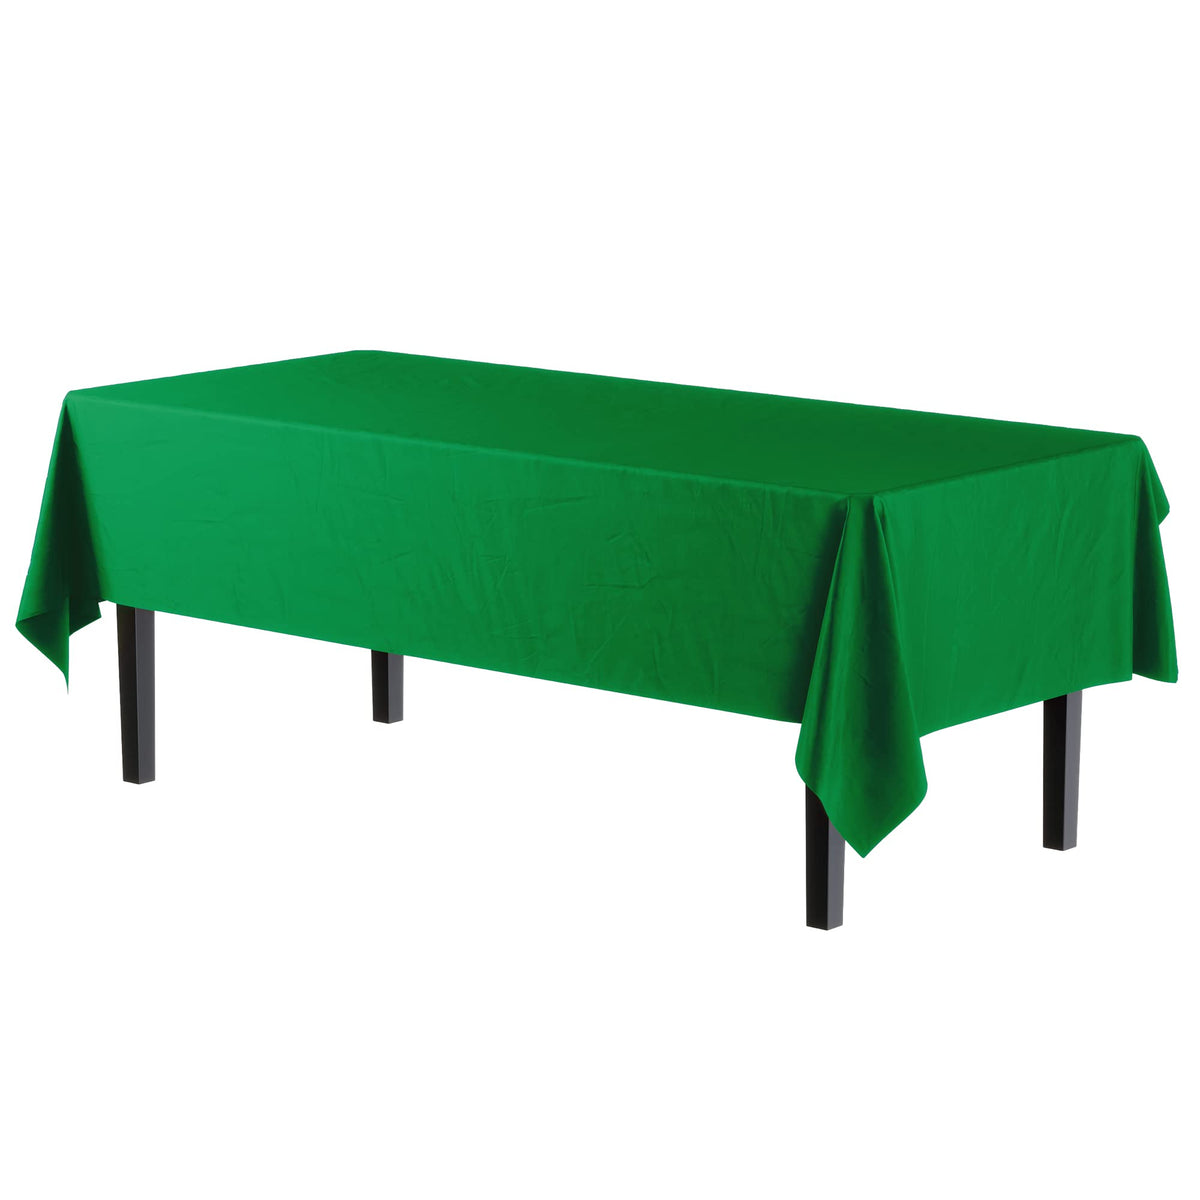 Premium Emerald Green Table Cover